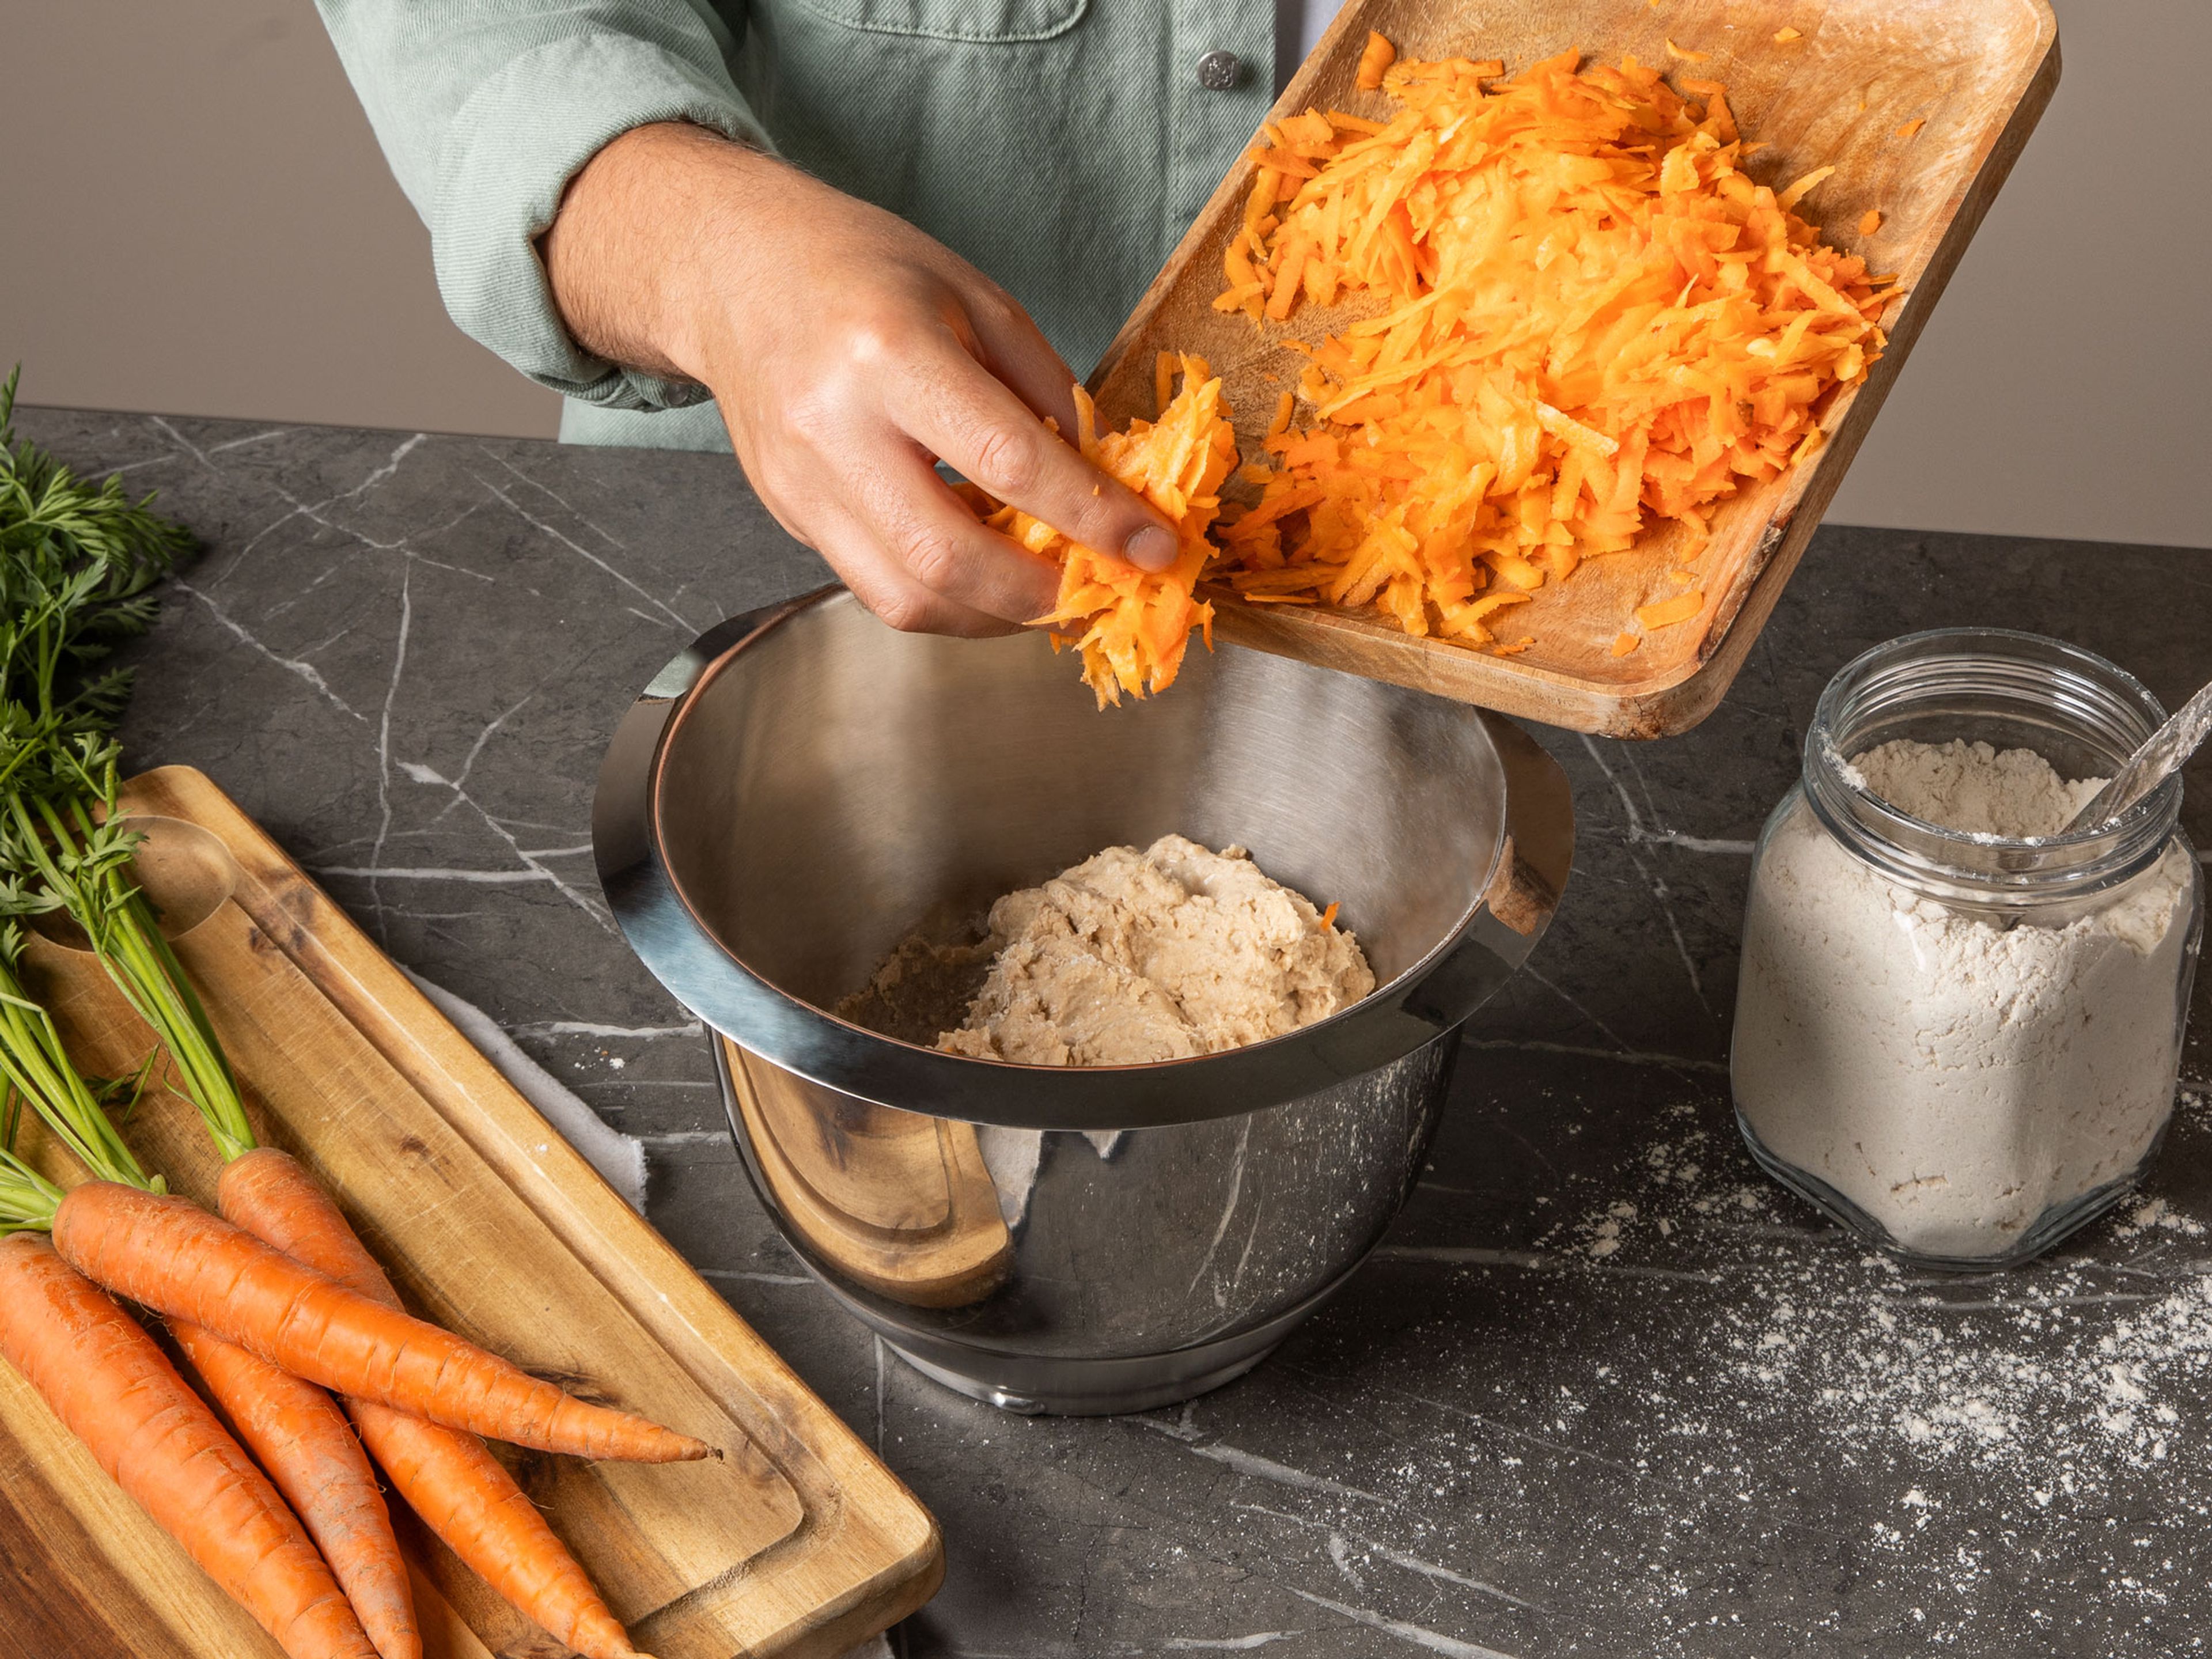 Mehl und Salz in der Schüssel einer Küchenmaschine mit Knethaken mischen. Auf niedriger Stufe rühren lassen und langsam die Hefe-Wasser-Mischung hineingeben. Kurz bevor die Zutaten vollständig in den Teig eingearbeitet sind, geraspelte Karotten hinzugeben. Küchenmaschine auf hohe Geschwindigkeit stellen und ca. 7-10 Min. kneten lassen, bis der Teig glatt und elastisch ist. Anschließend mit einem feuchten Geschirrtuch abdecken und ca. 1-2 Std. ruhen lassen, bis sich die Größe des Teigs verdoppelt hat.